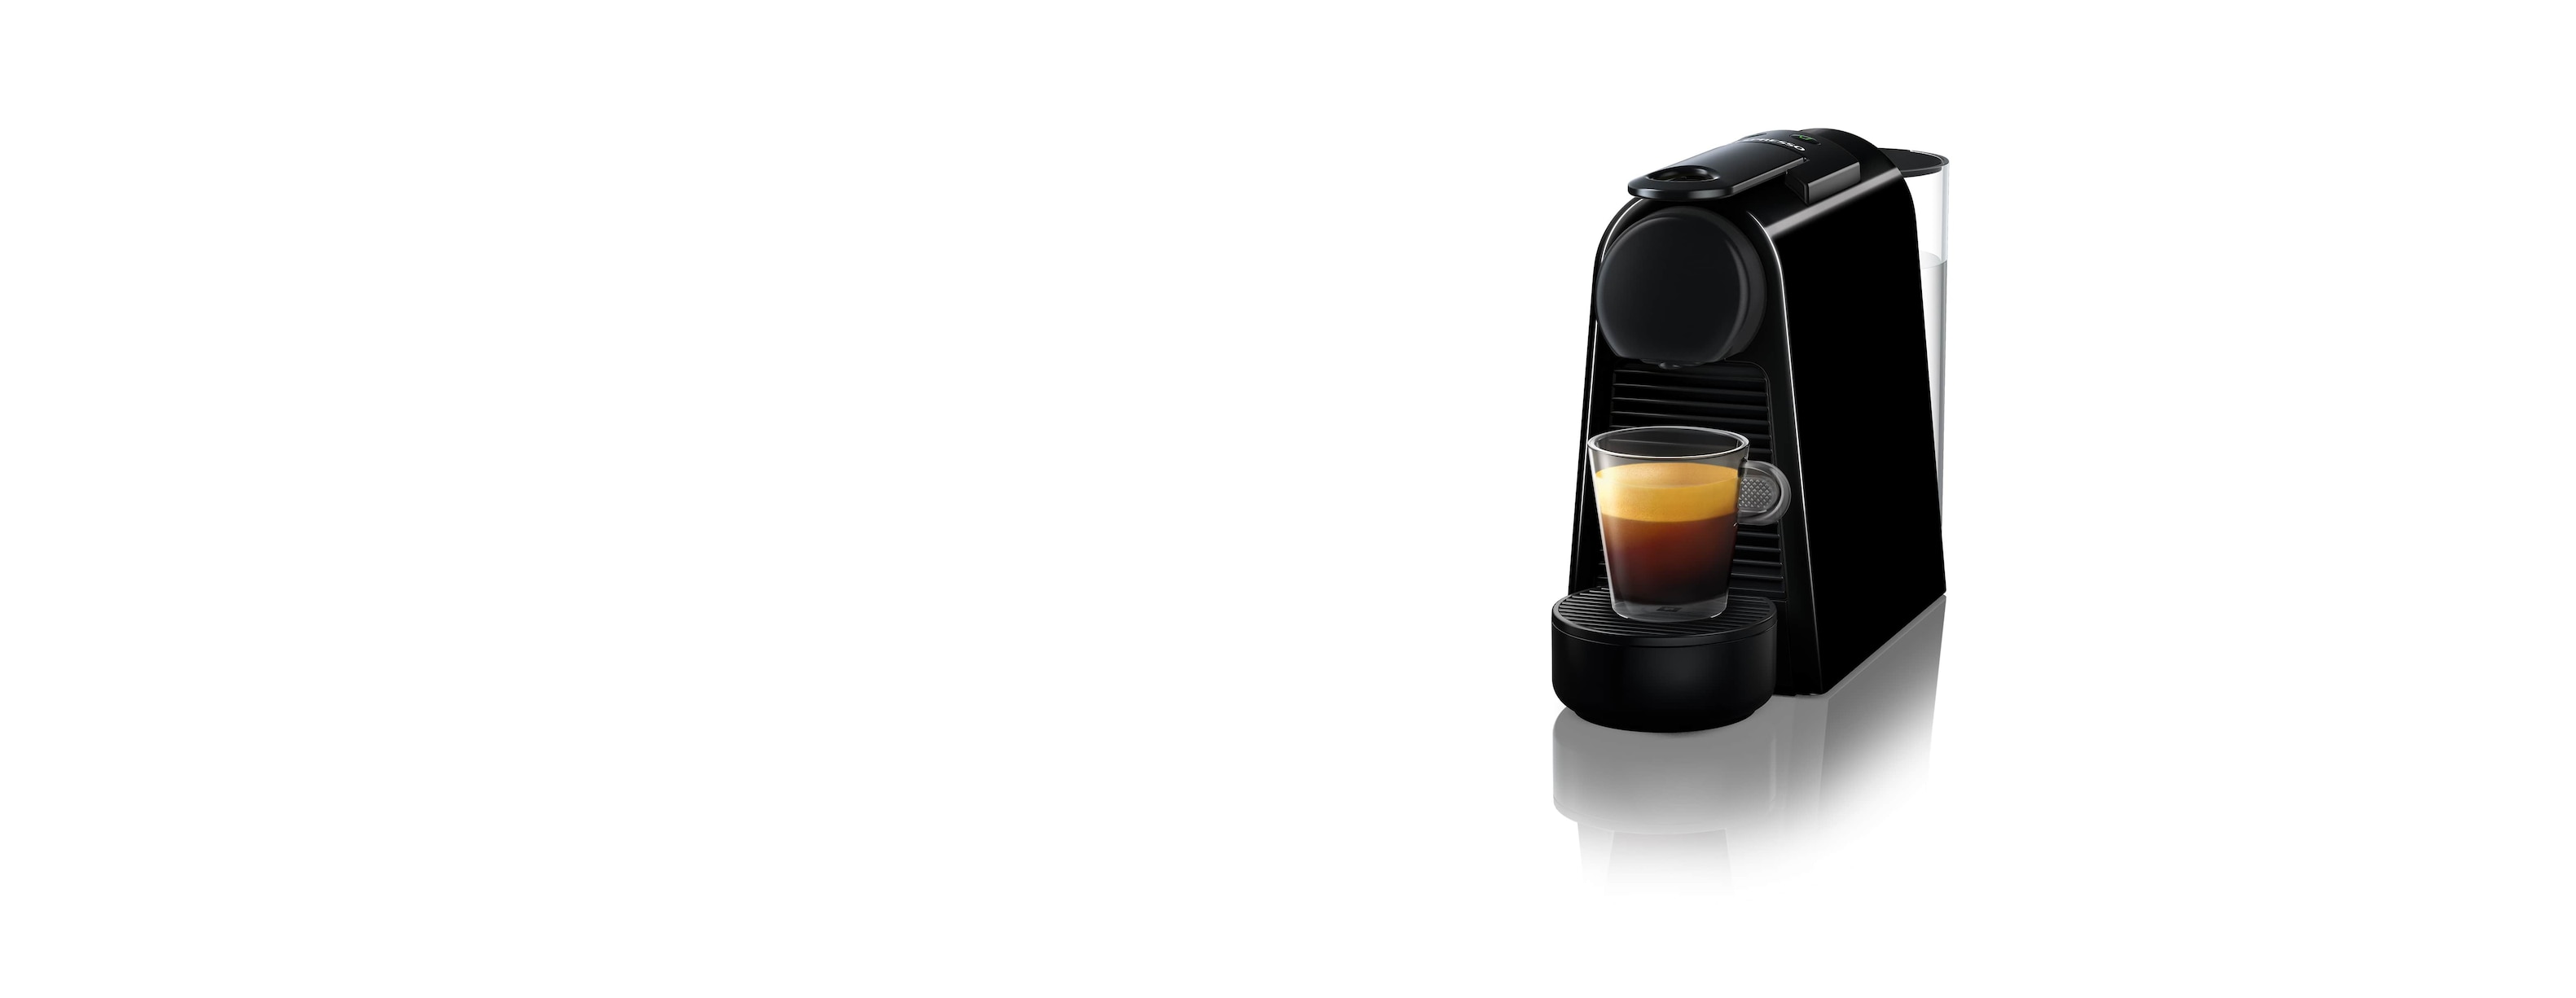 M-0451-Essenza-Mini-Nespresso-D30-Black-PDP-Background-TQ-min.jpg